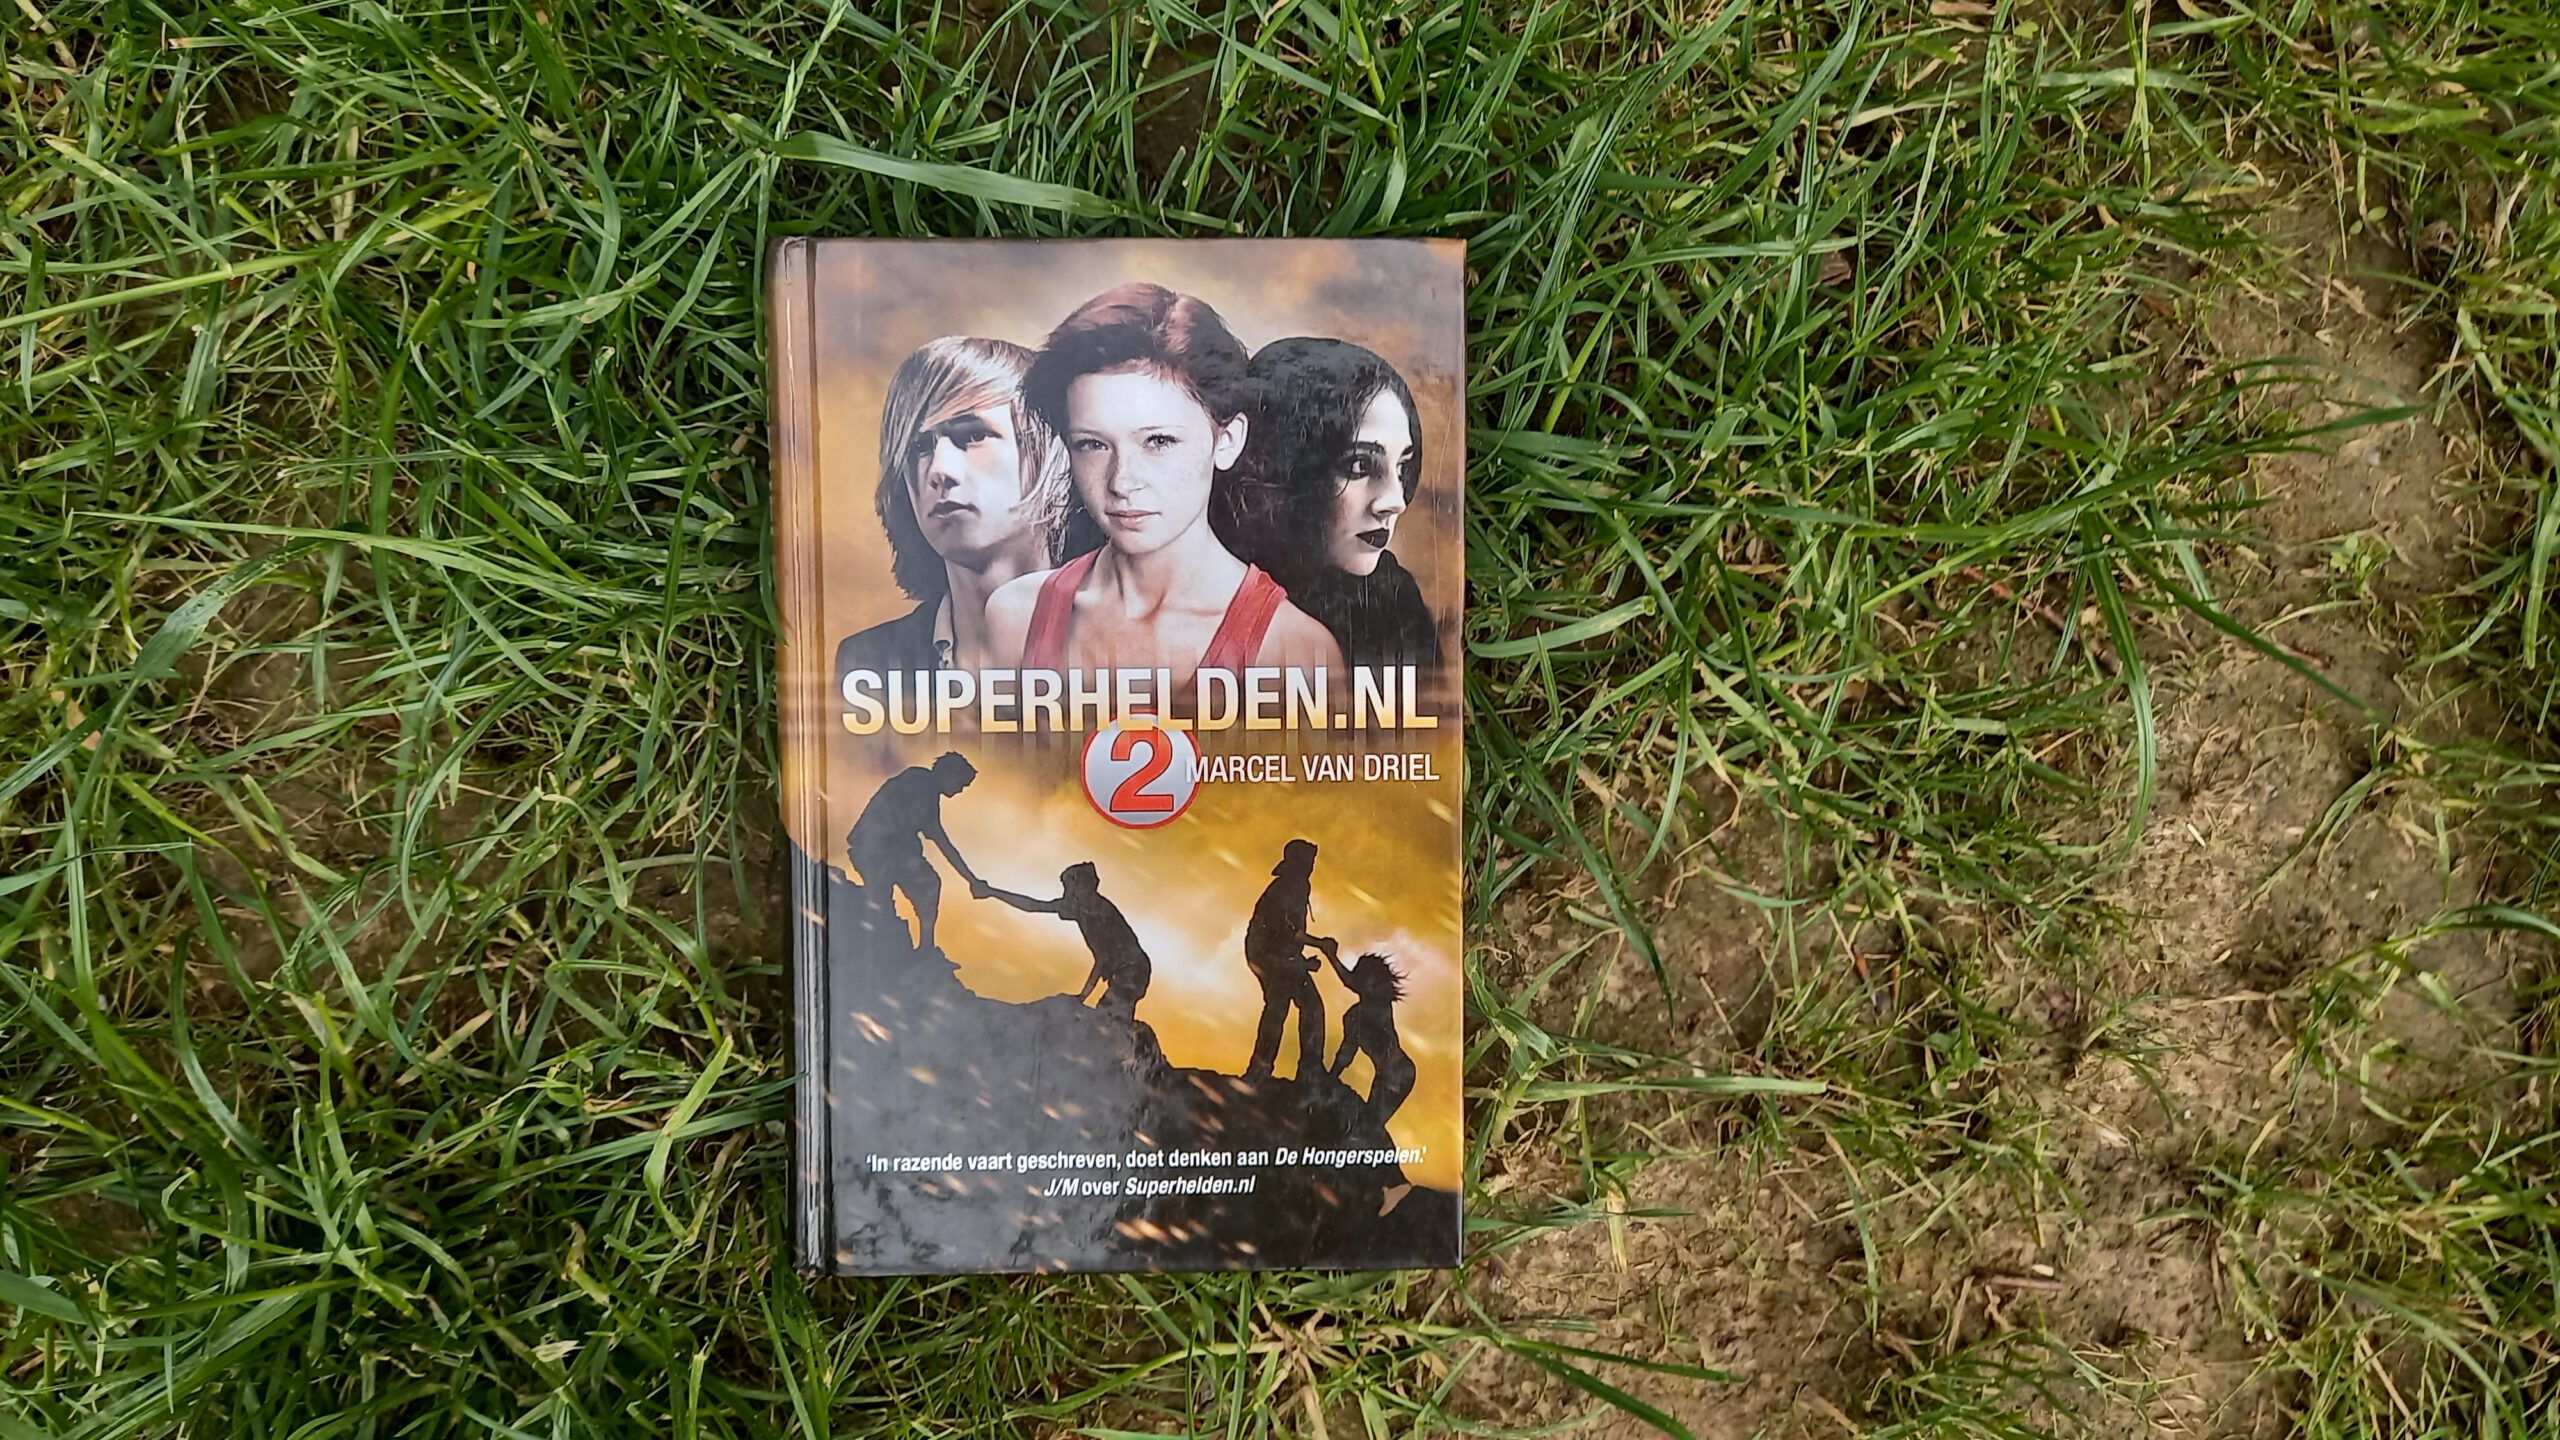 Superhelden.nl 2 van Marcel van Driel